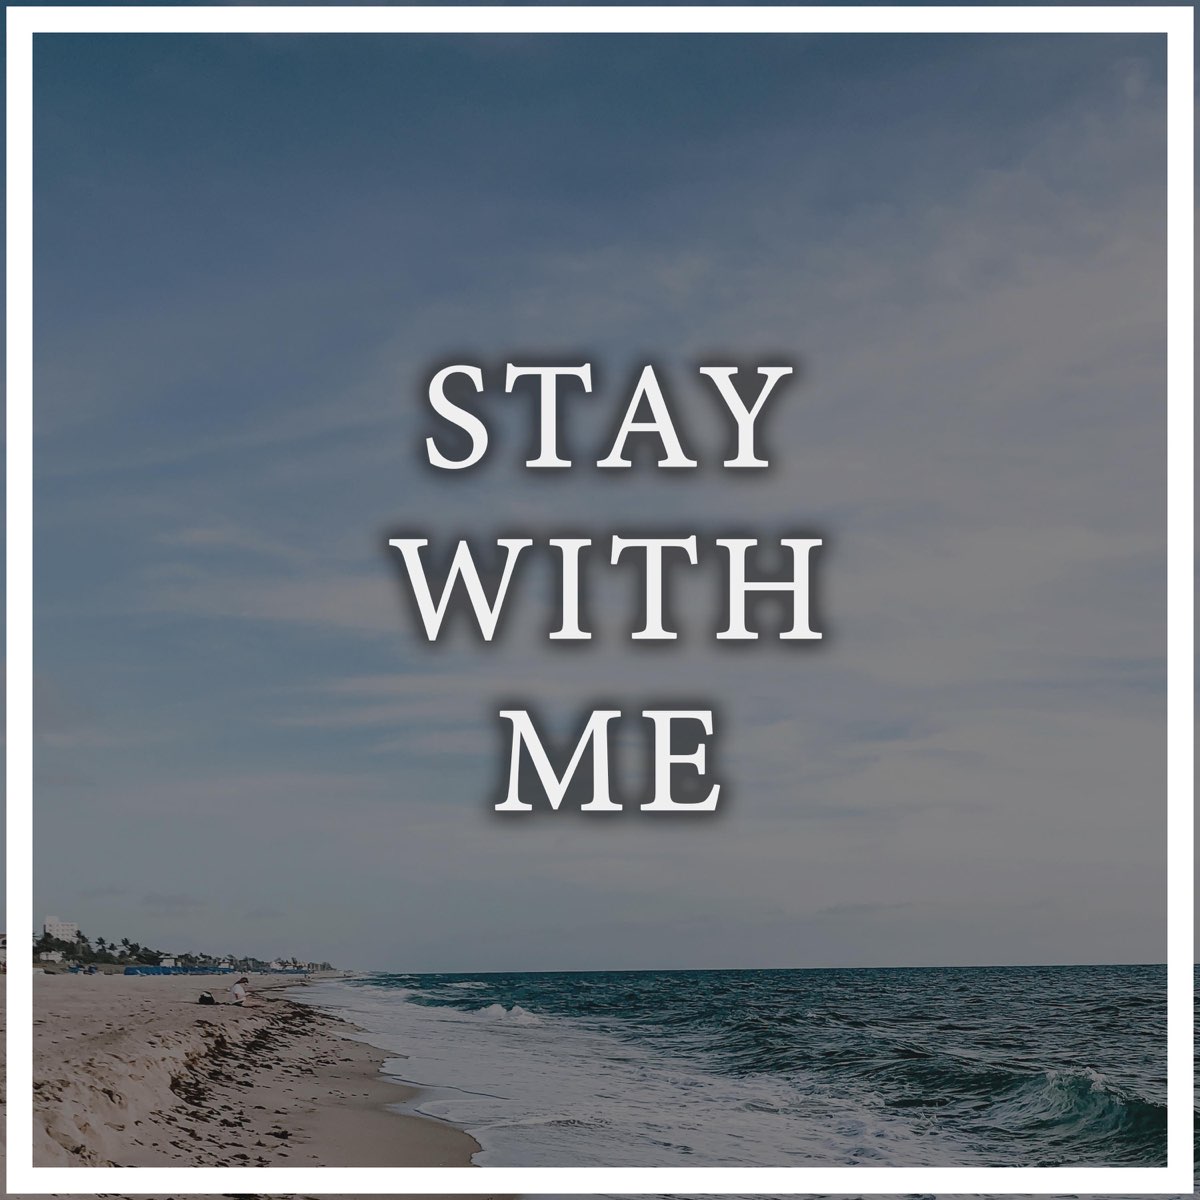 Stay with me now. Stay with me. Stay with me Song. Stay with me BL. Stay with me book.